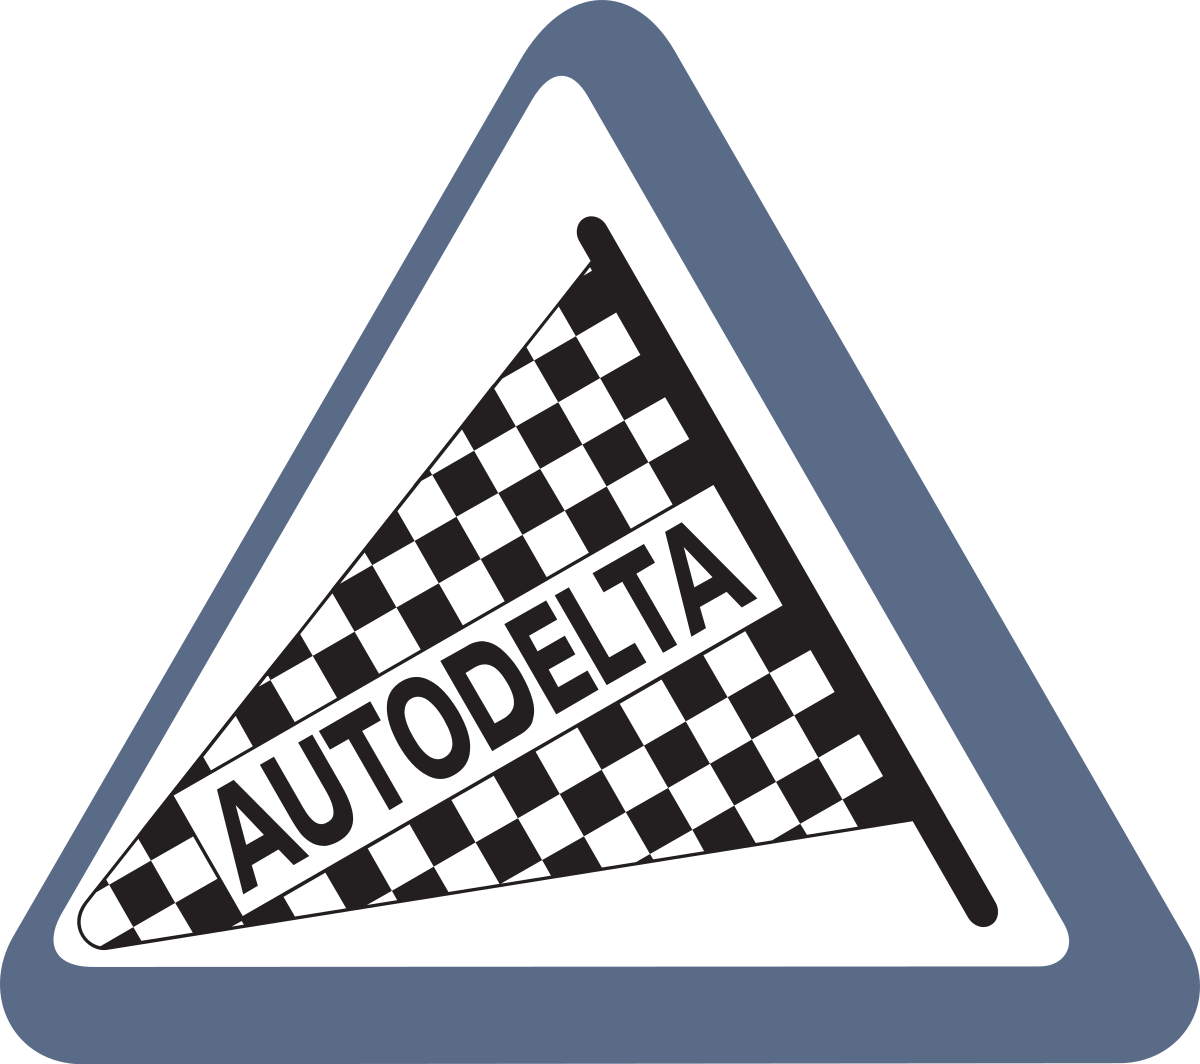 Auto Delta